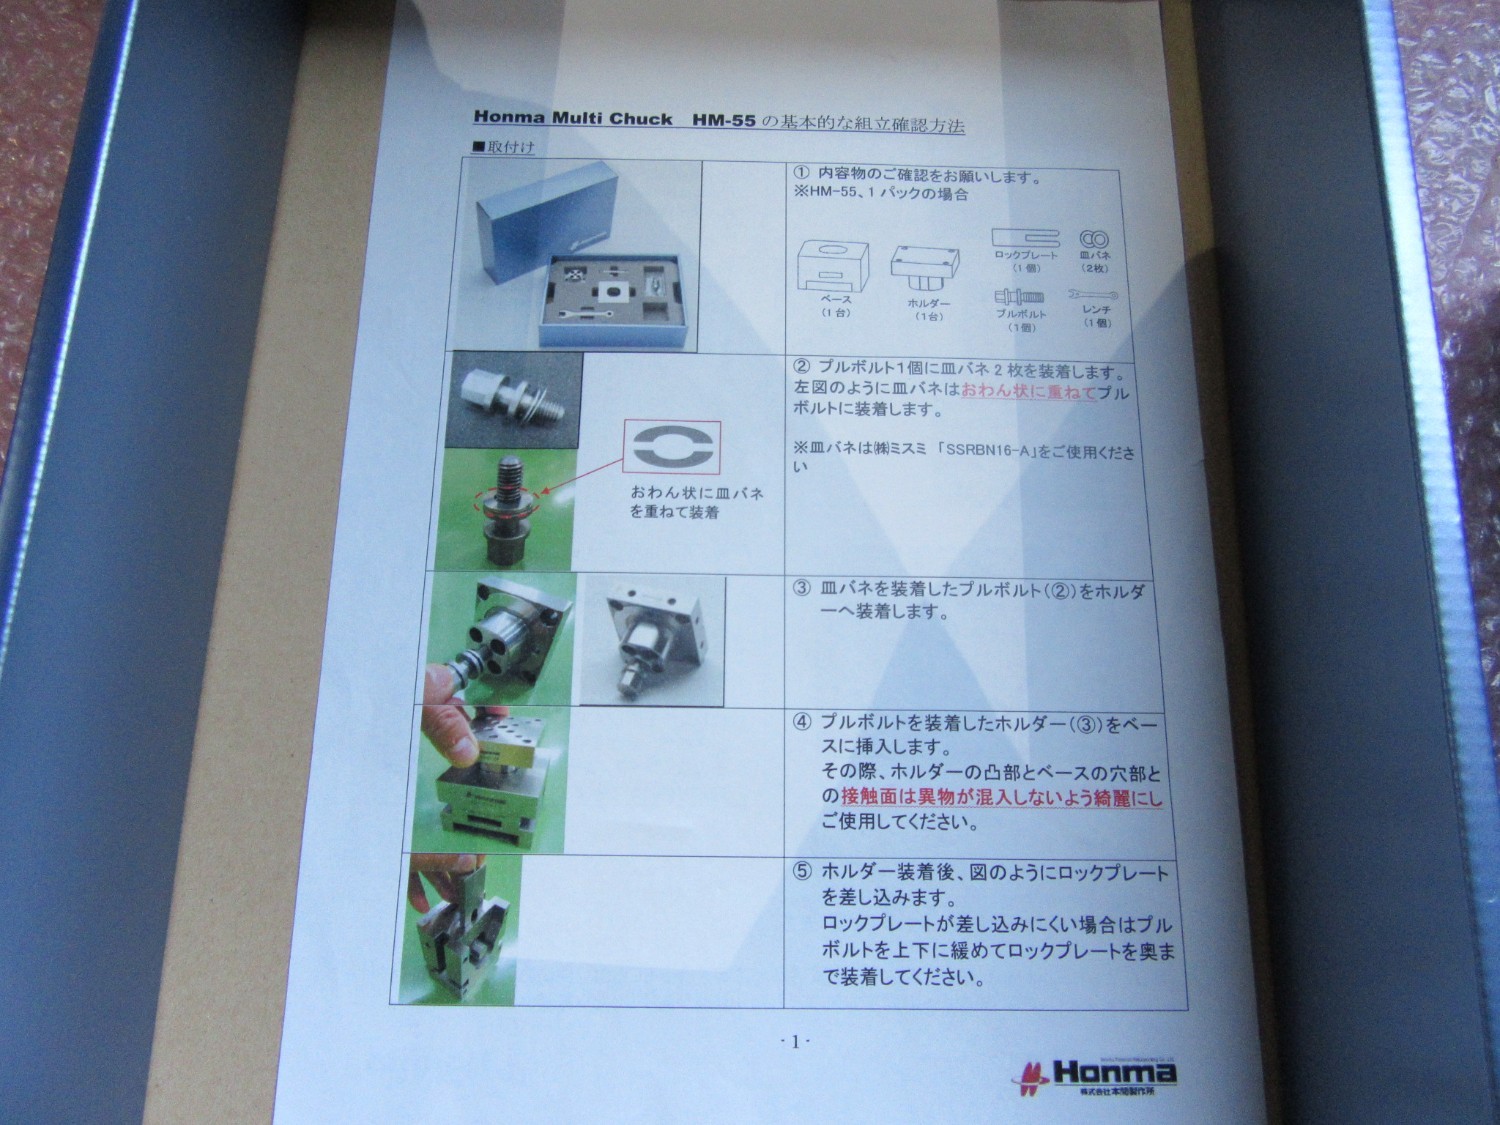 中古Other 【ホンマ マルチ チャック】HM-55(HB101380) Honma